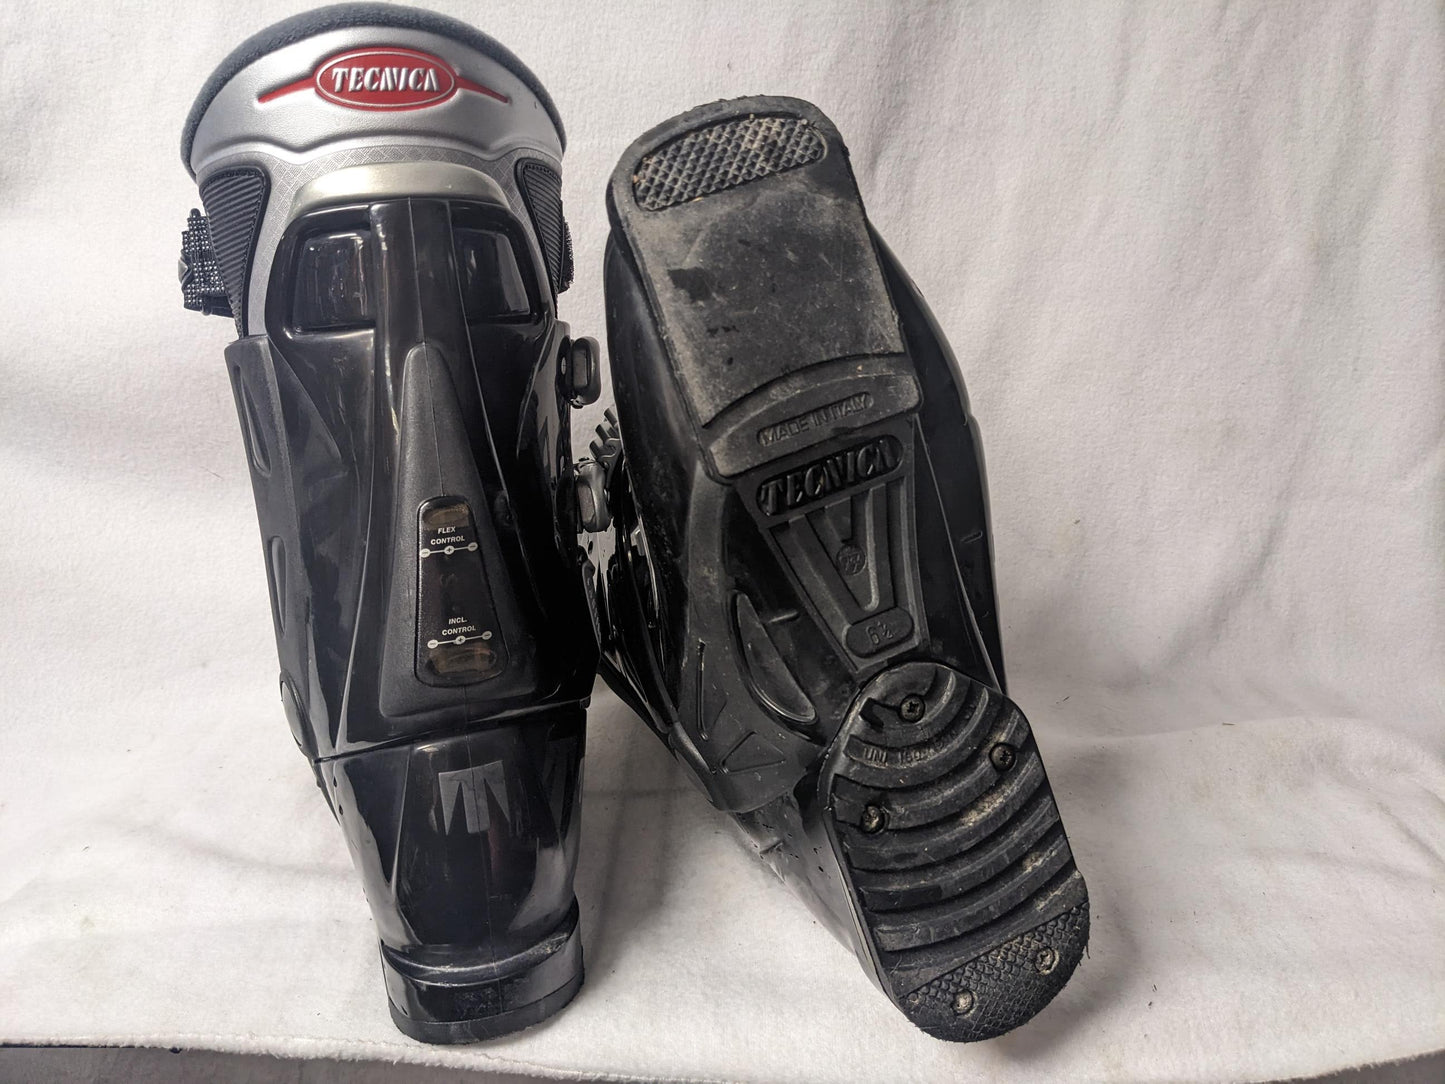 Tecnica Innotec TI 4.4 Ski Boots Size 24.5 Color Black Condition Used